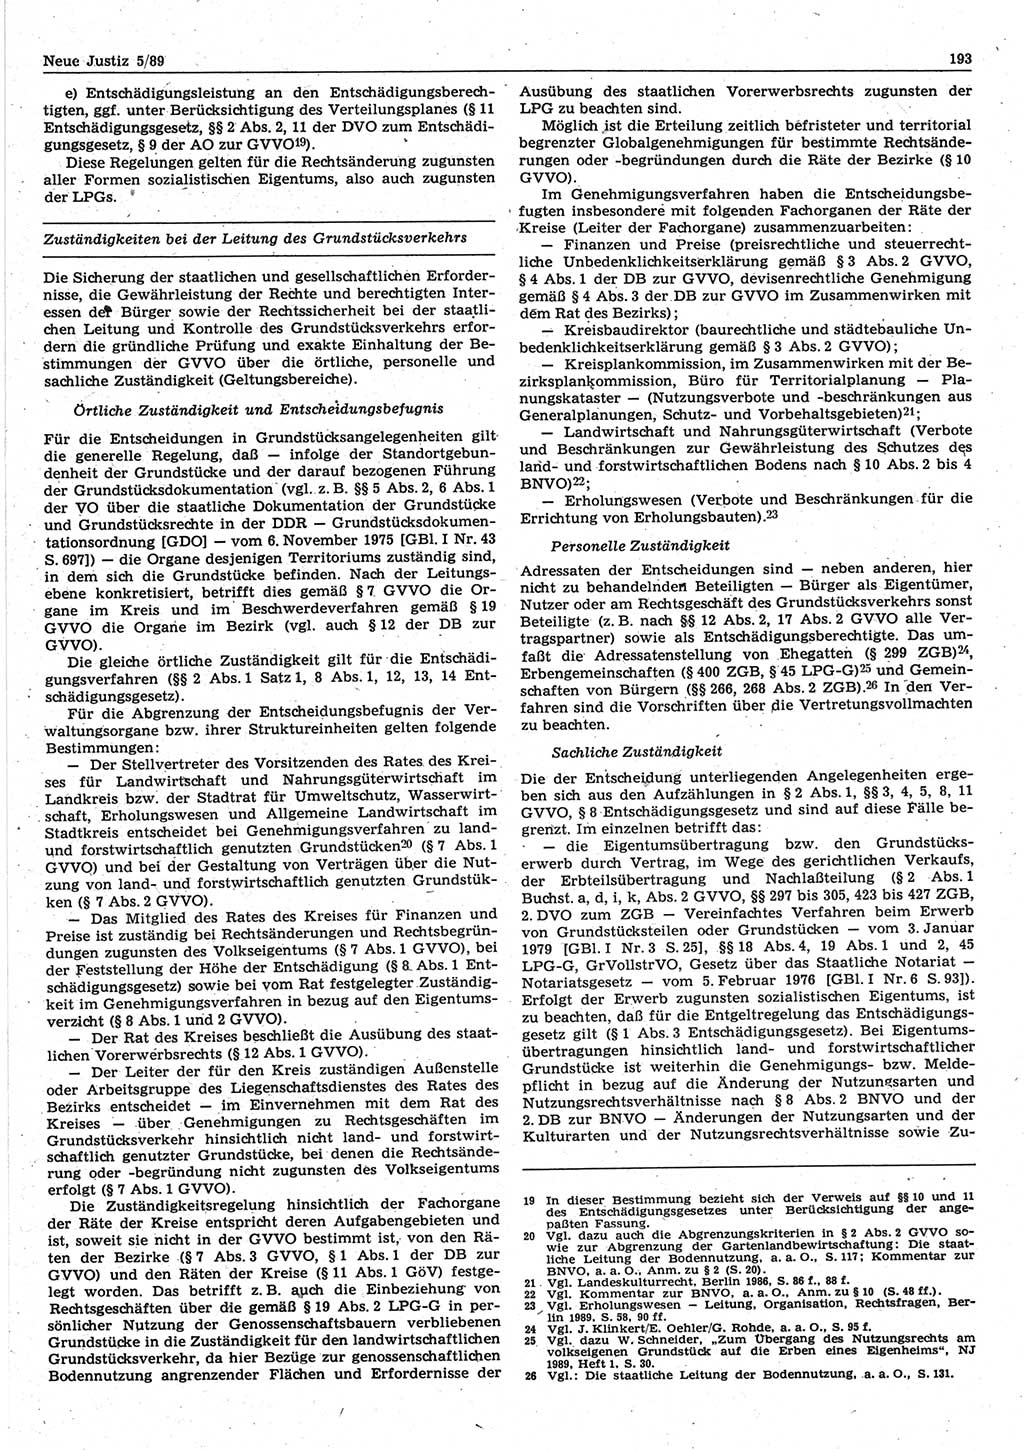 Neue Justiz (NJ), Zeitschrift für sozialistisches Recht und Gesetzlichkeit [Deutsche Demokratische Republik (DDR)], 43. Jahrgang 1989, Seite 193 (NJ DDR 1989, S. 193)